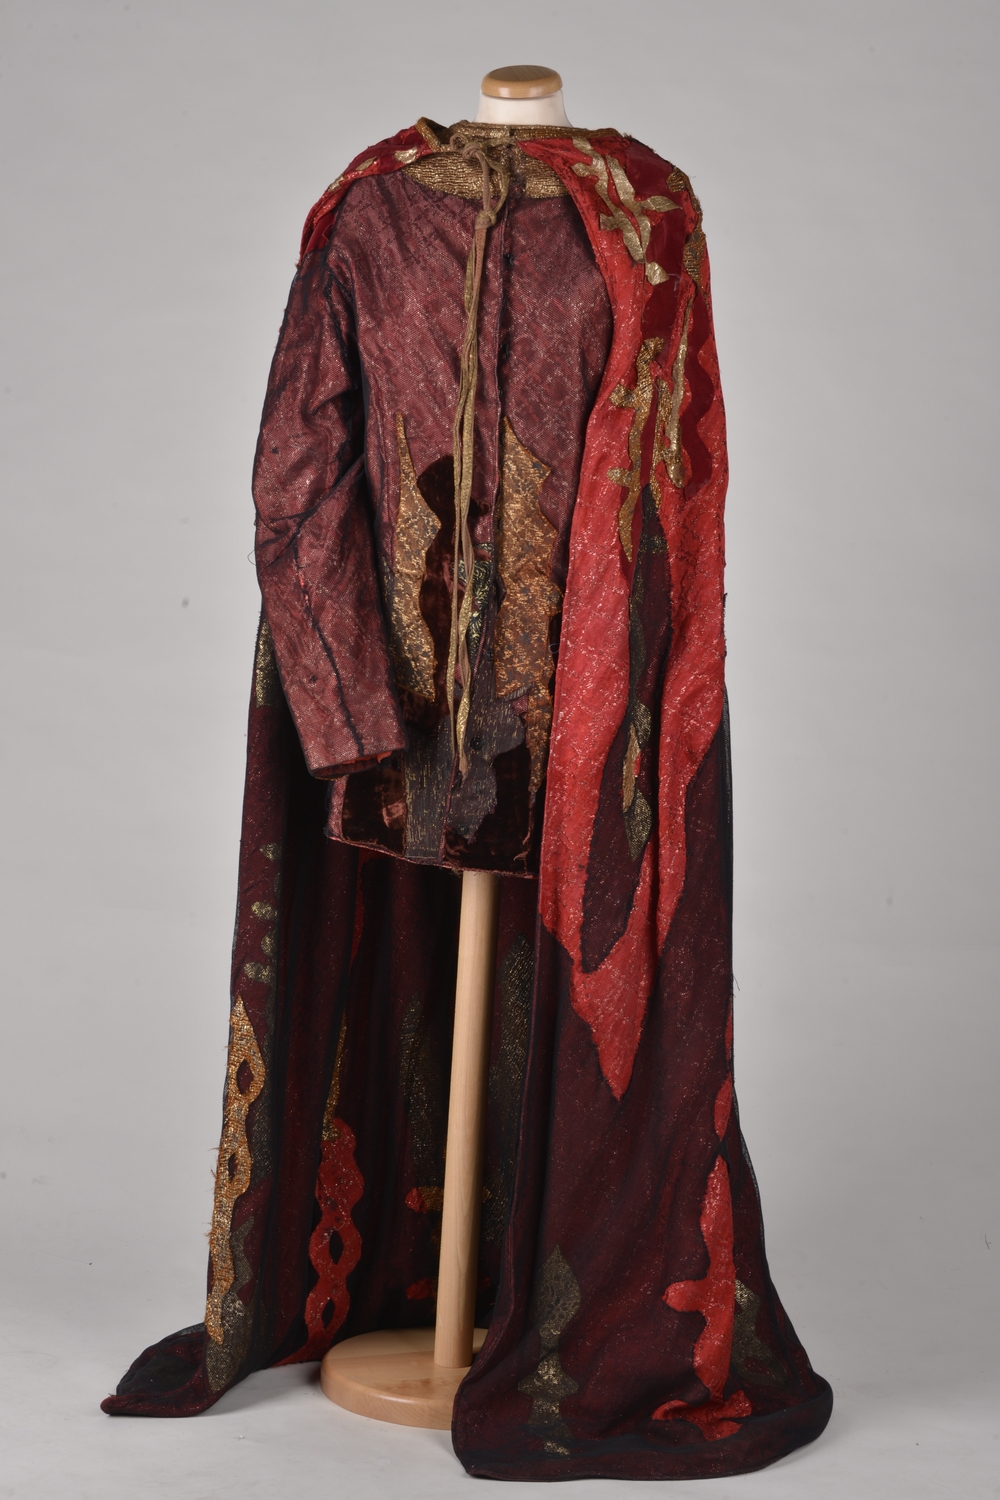 Kostým Cida, zbierka kostýmov, Múzeum Divadelného ústavu, foto: Ivan Kříž